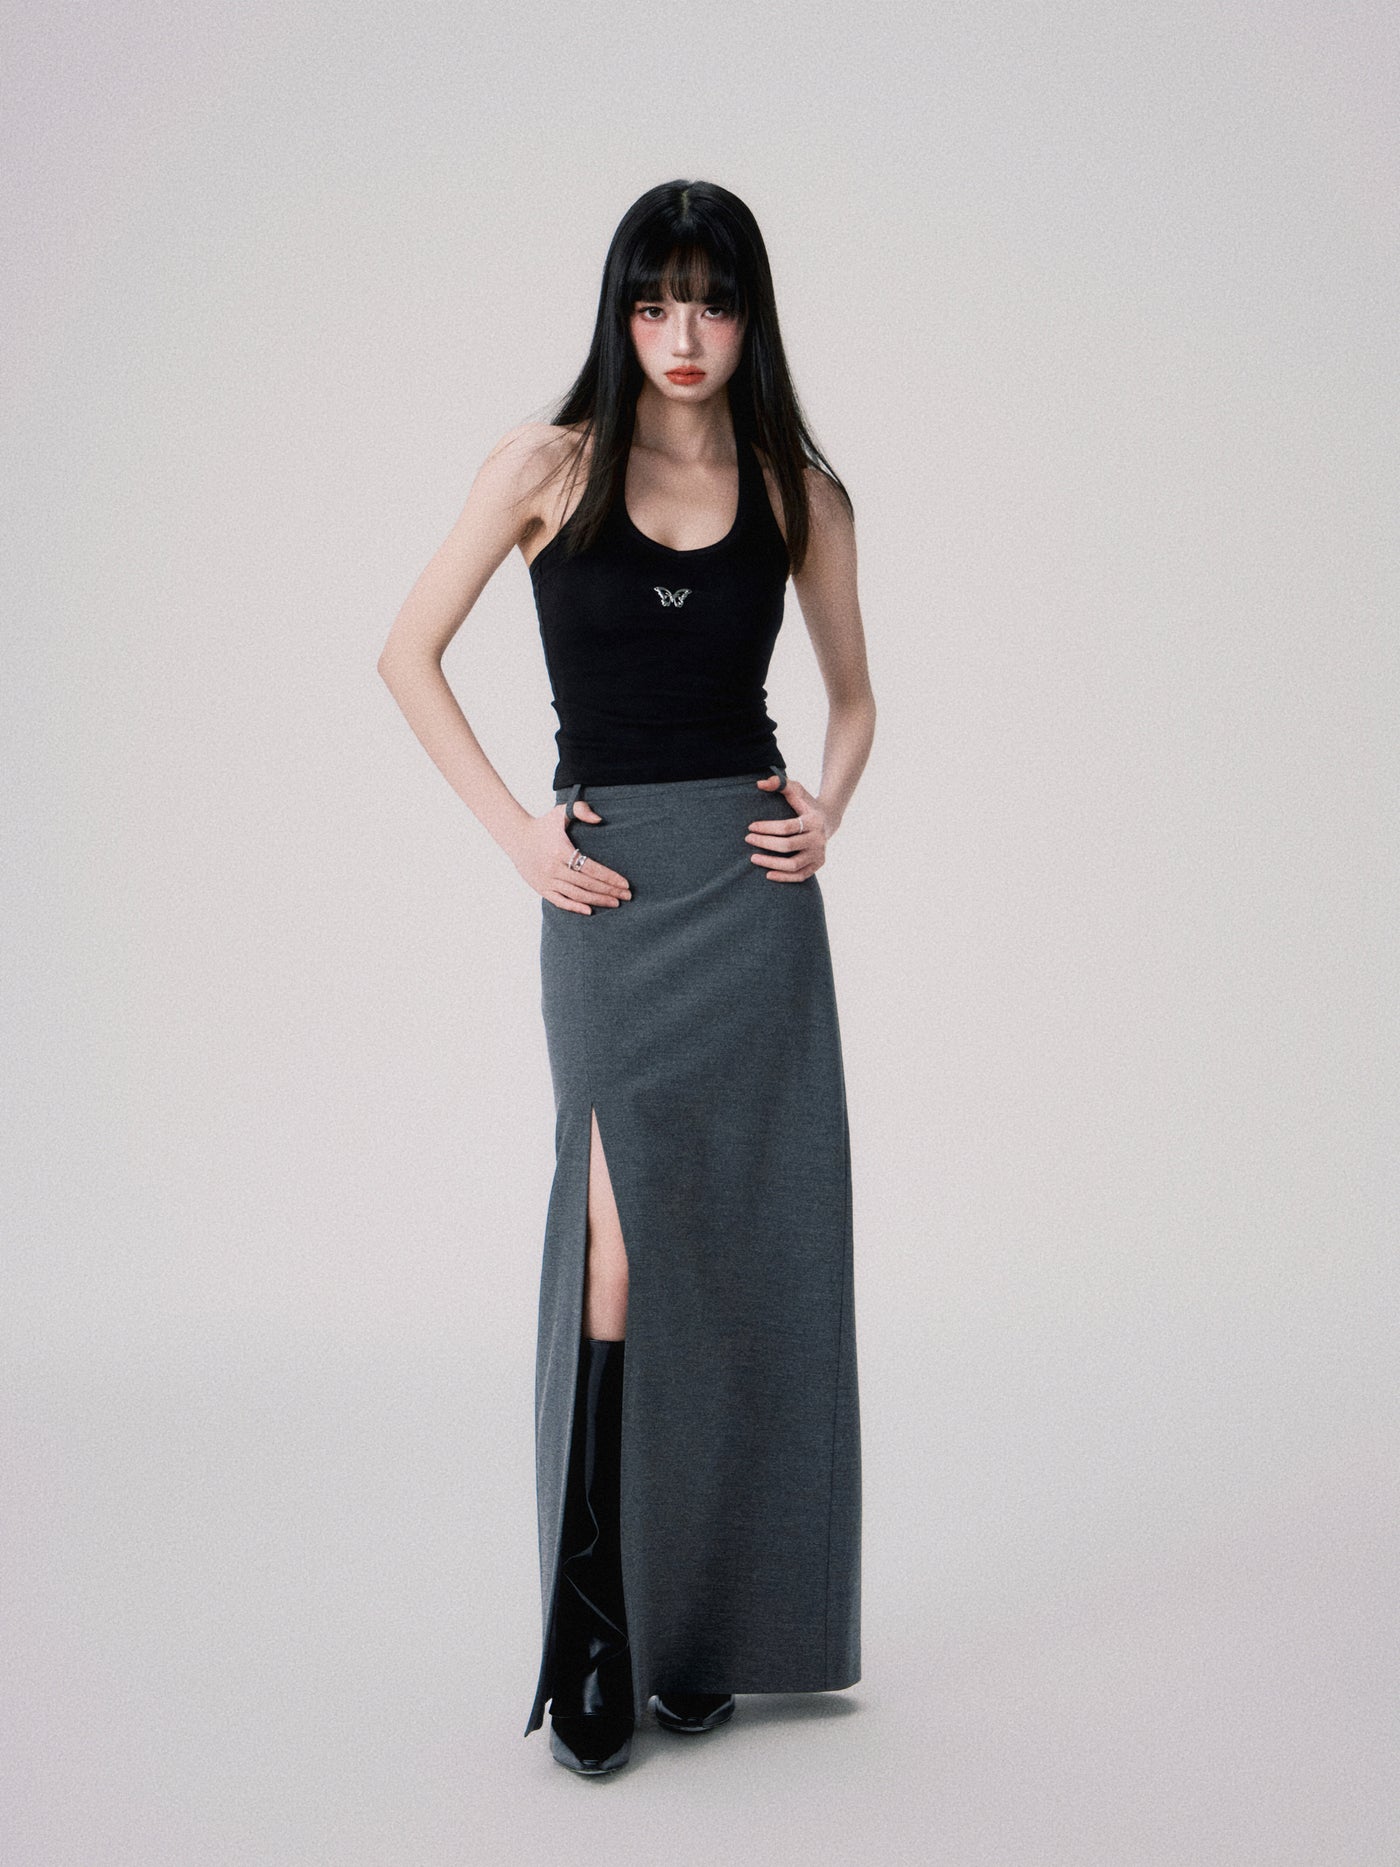 Straight Mid-rise Slit Maxi Skirt LUL0054